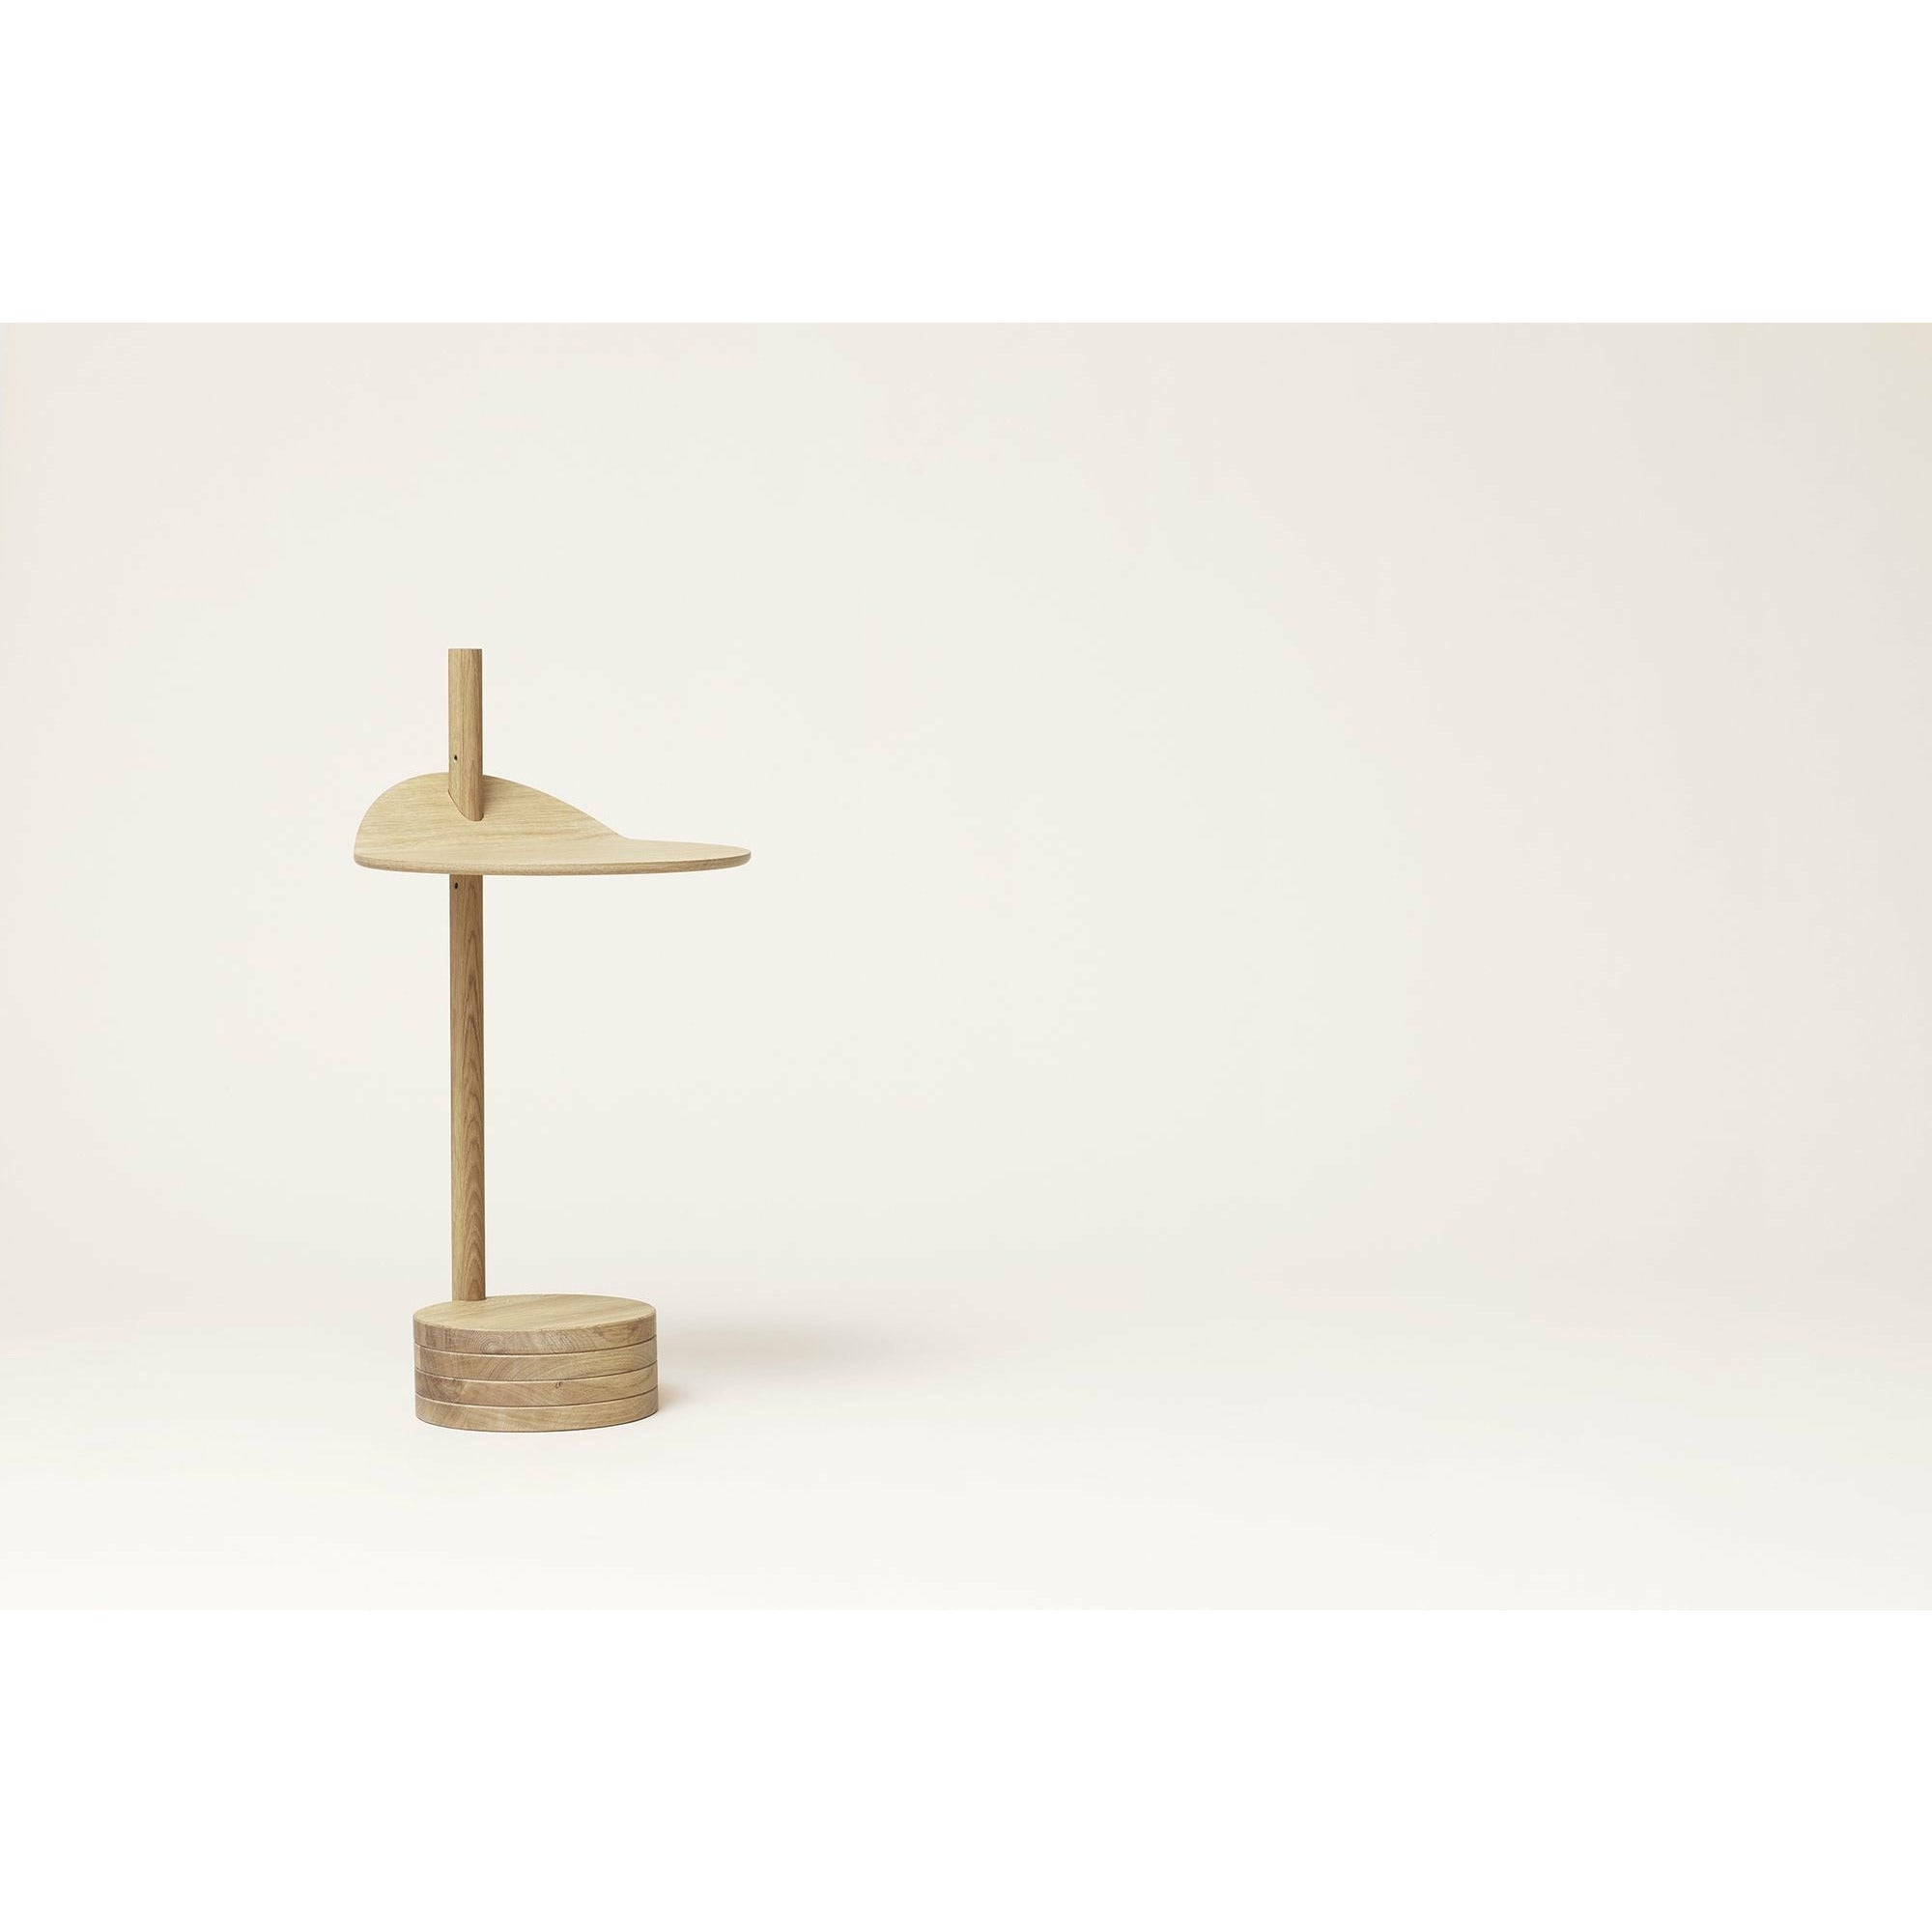 Form & Refine Table d'appoint Stilk. Chêne à l'huile blanche